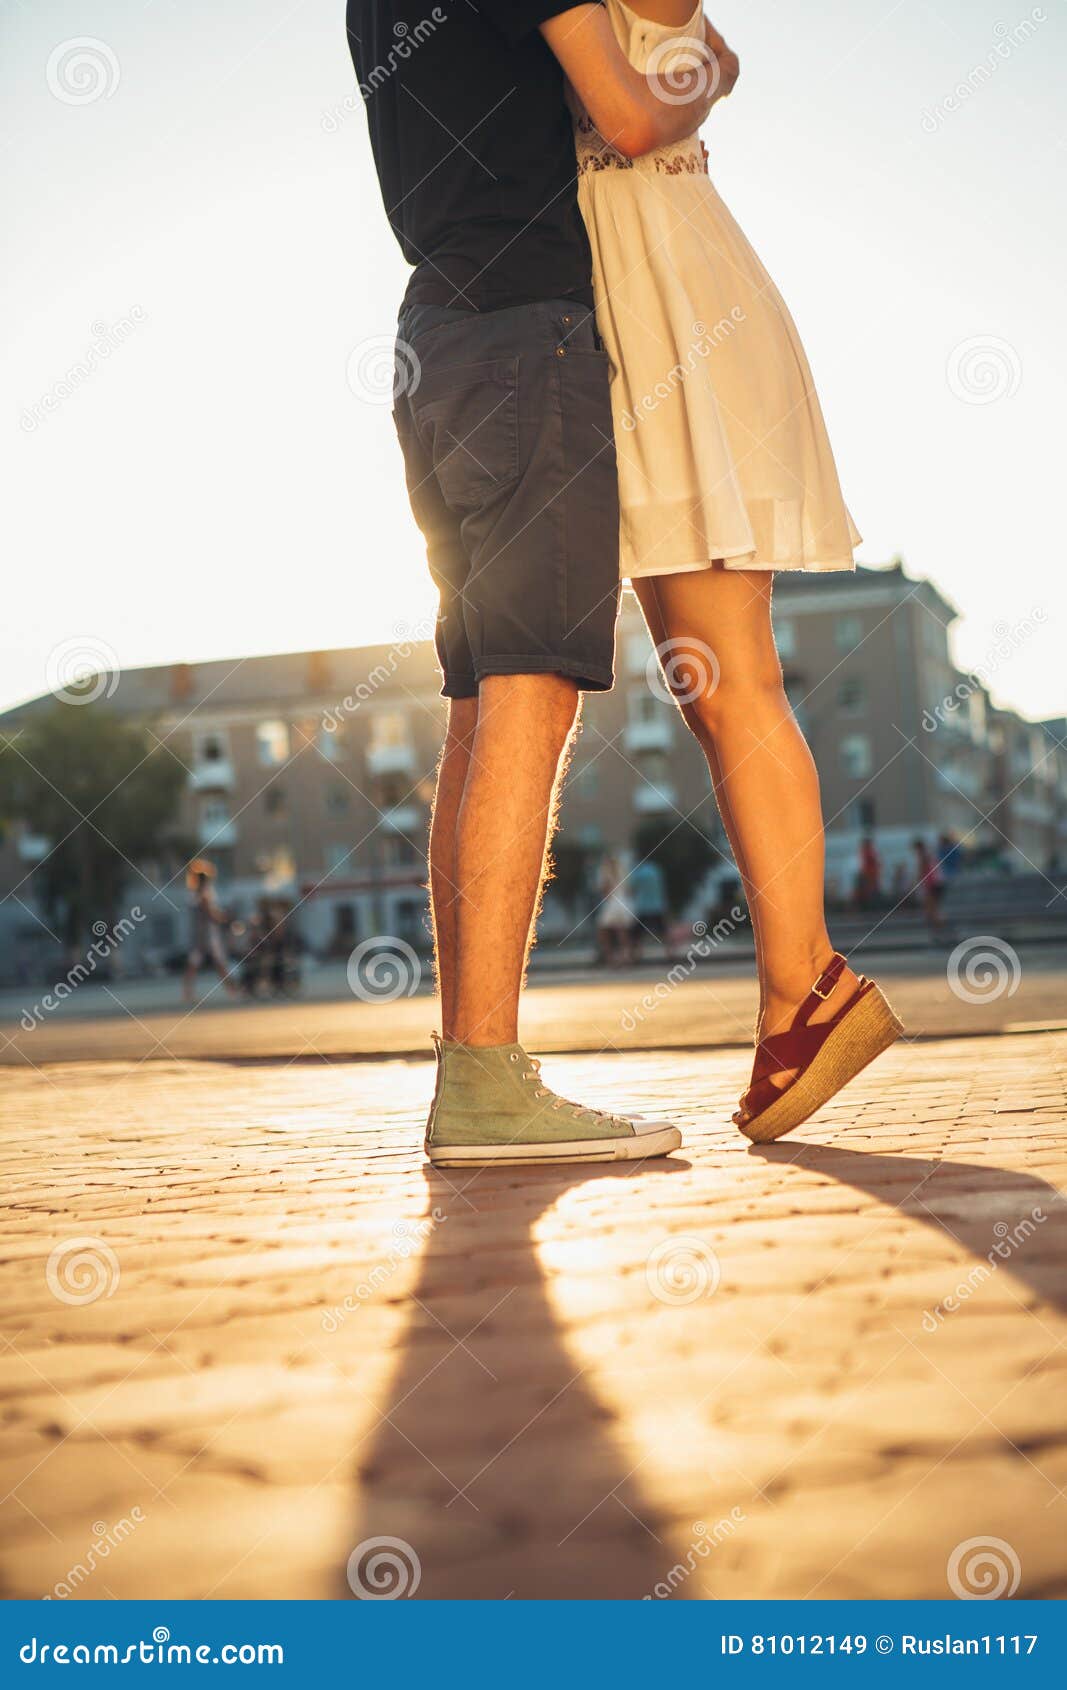 Девушка обнимает ноги. Девушка на цыпочках с парнем. Поцелуй на цыпочках. Девушка на носочках с парнем. Девушка обнимает мужчину ногами.